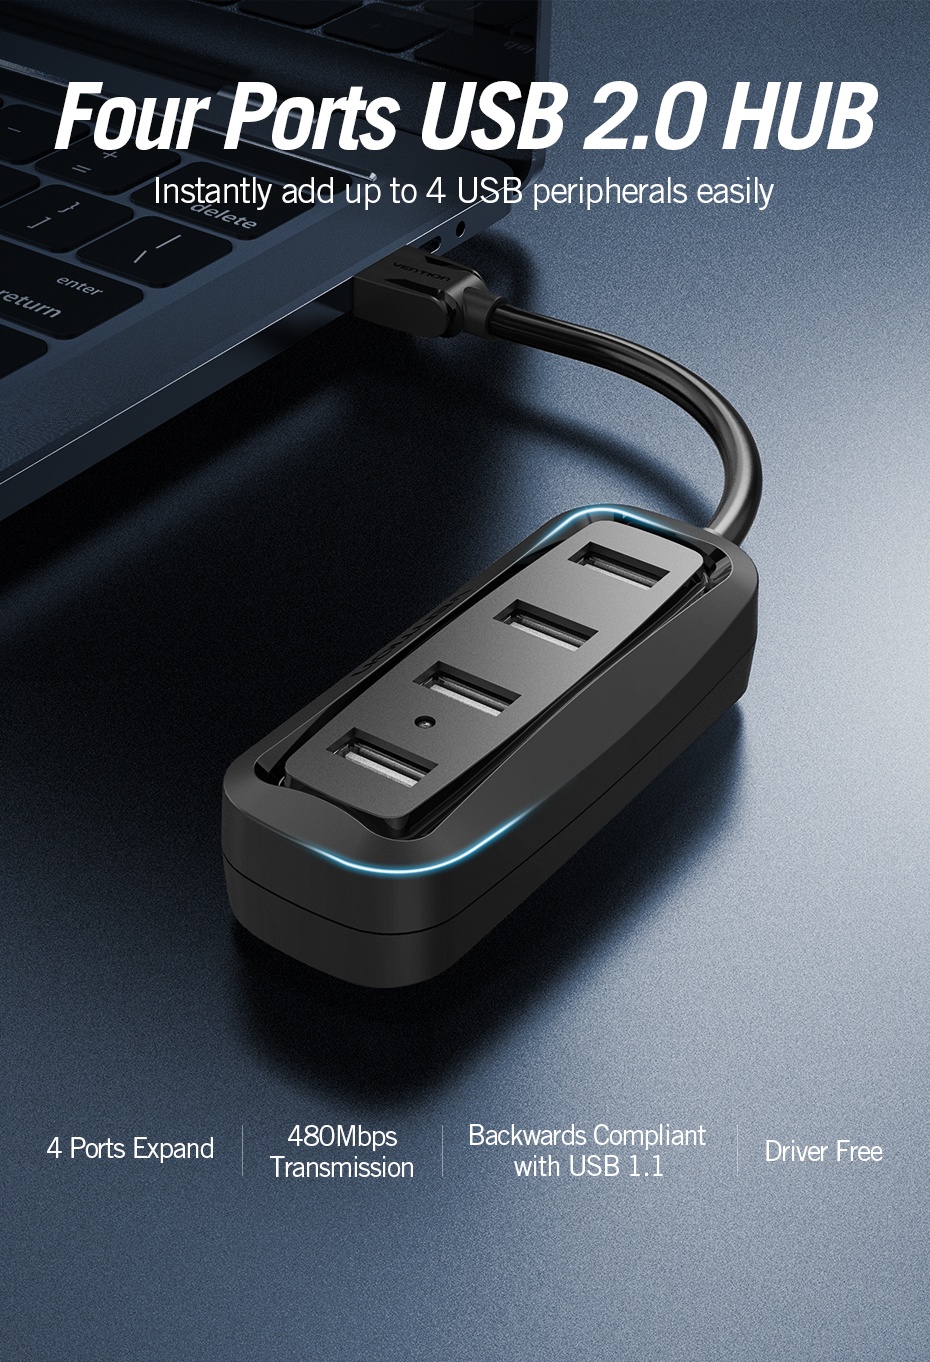 ภาพประกอบคำอธิบาย Vention ฮับ USB 2.0 ความเร็วสูง มี 4 พอร์ต ฮับ USB เชื่อมต่อจากด้านบน สำหรับพีซี แล็ปท็อป คอมพิวเตอร์ เครื่องอ่านบัตร เมาส์ คีย์บอร์ด